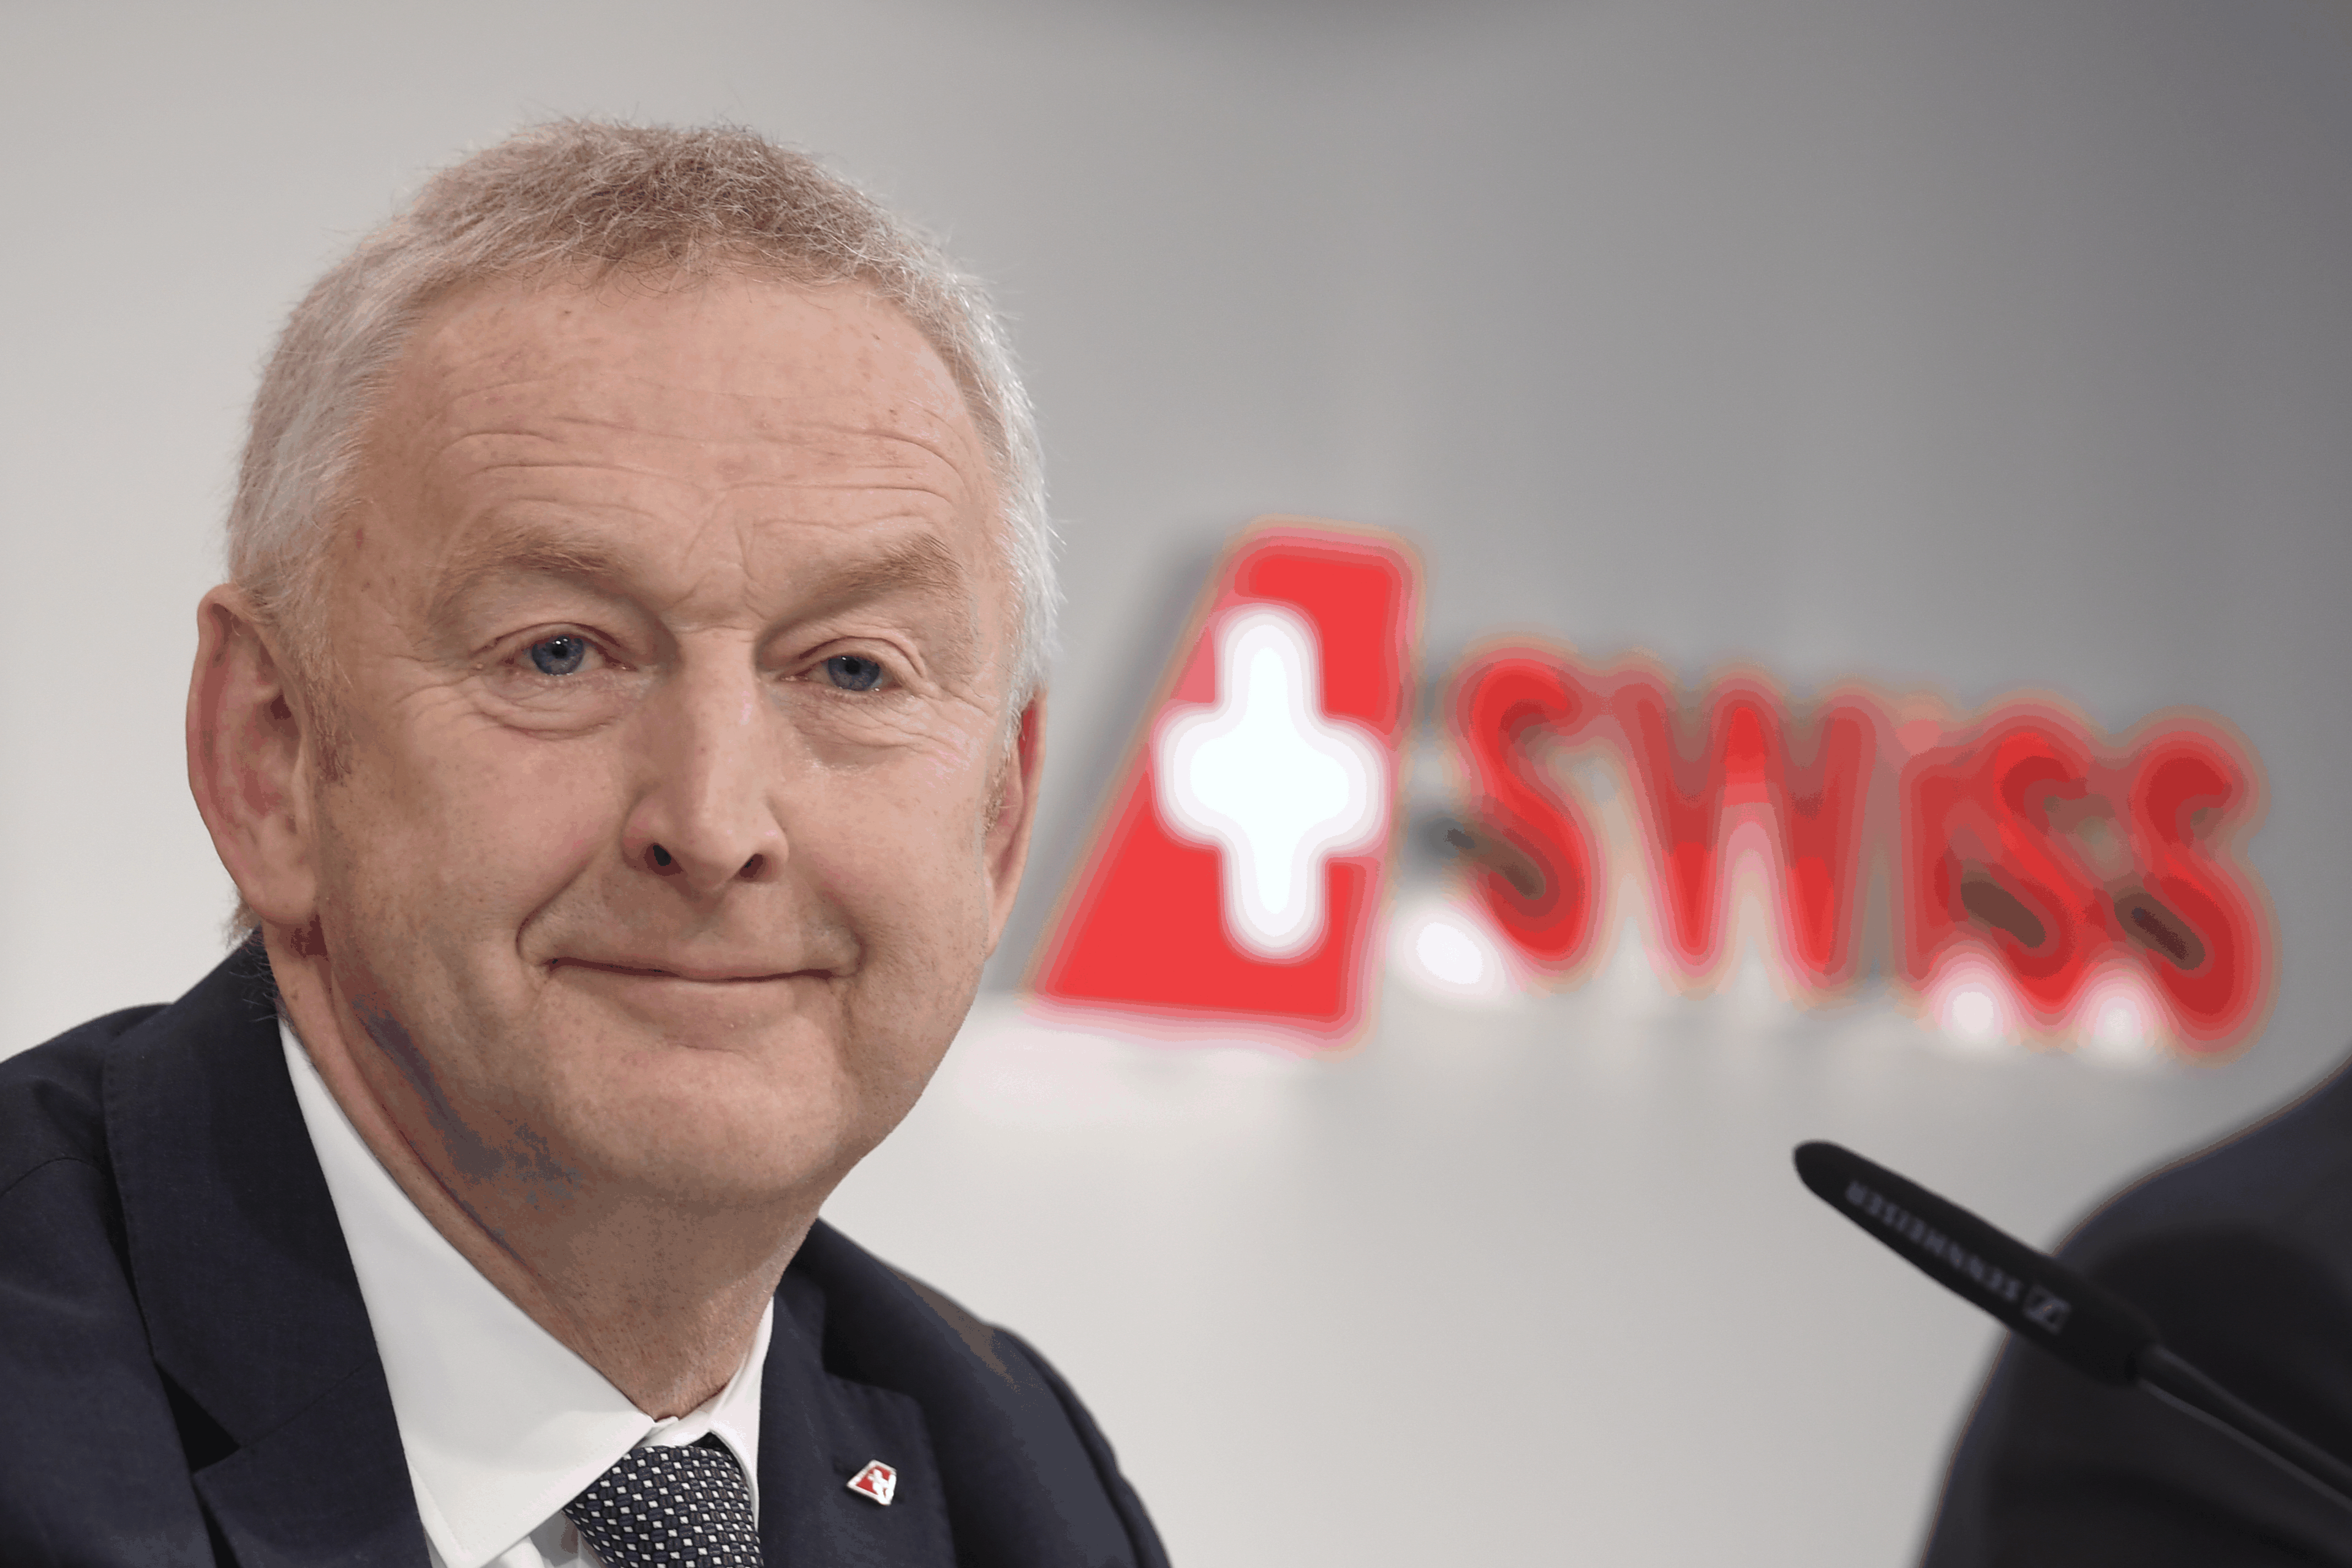 Swiss-CEO Thomas Klühr wird in der Schweizer Luftfahrtstiftung Einsitz nehmen, die sich für die Anliegen der Swiss stark machen soll.